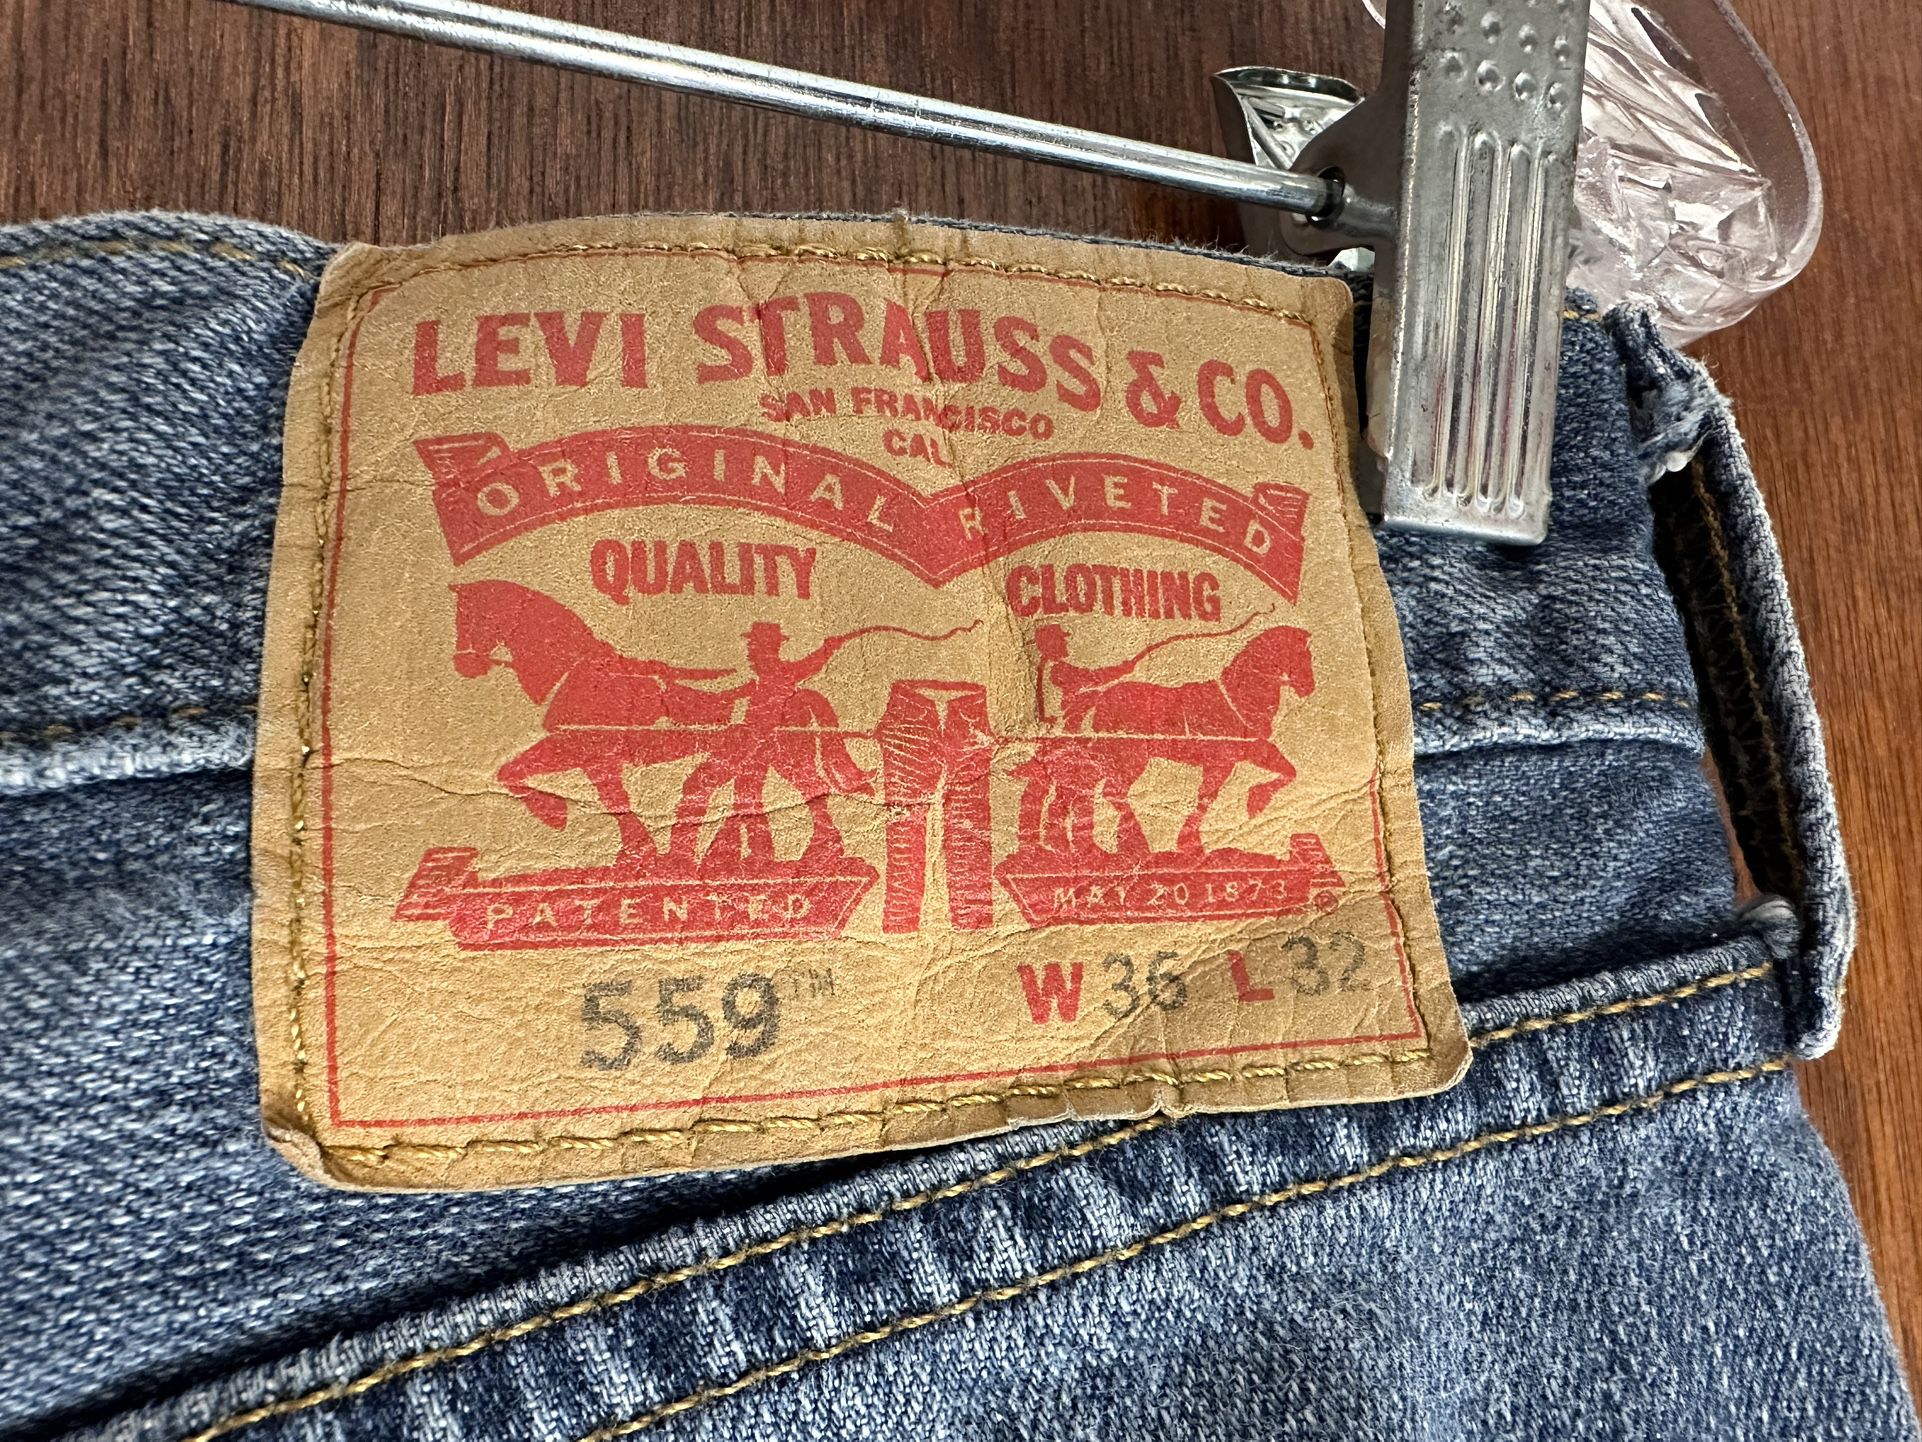 559 Mens levis jeans 36x32